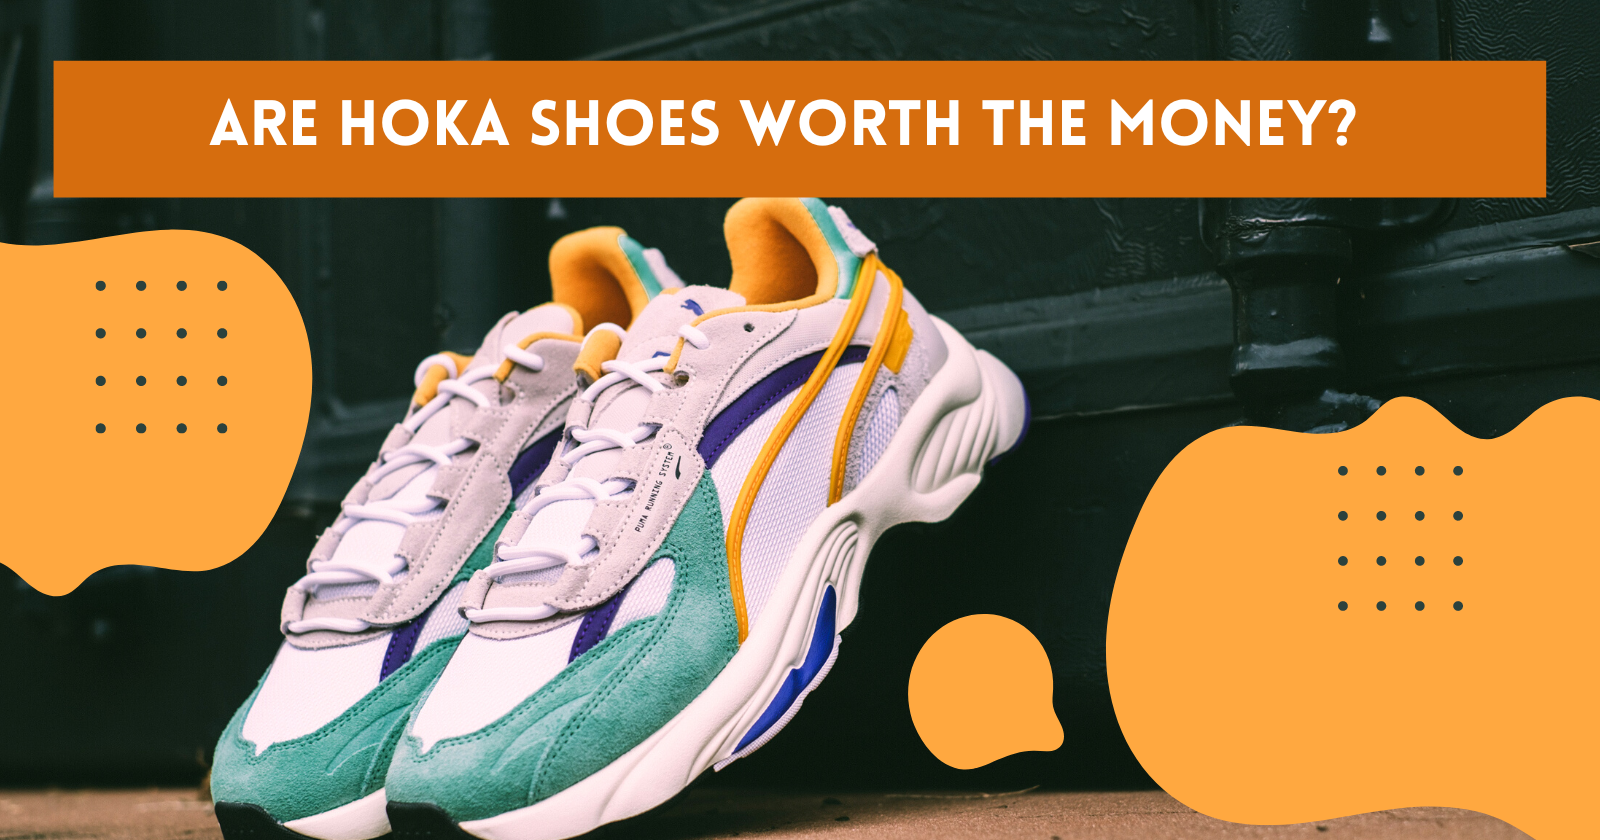 Are Hoka shoes worth the money